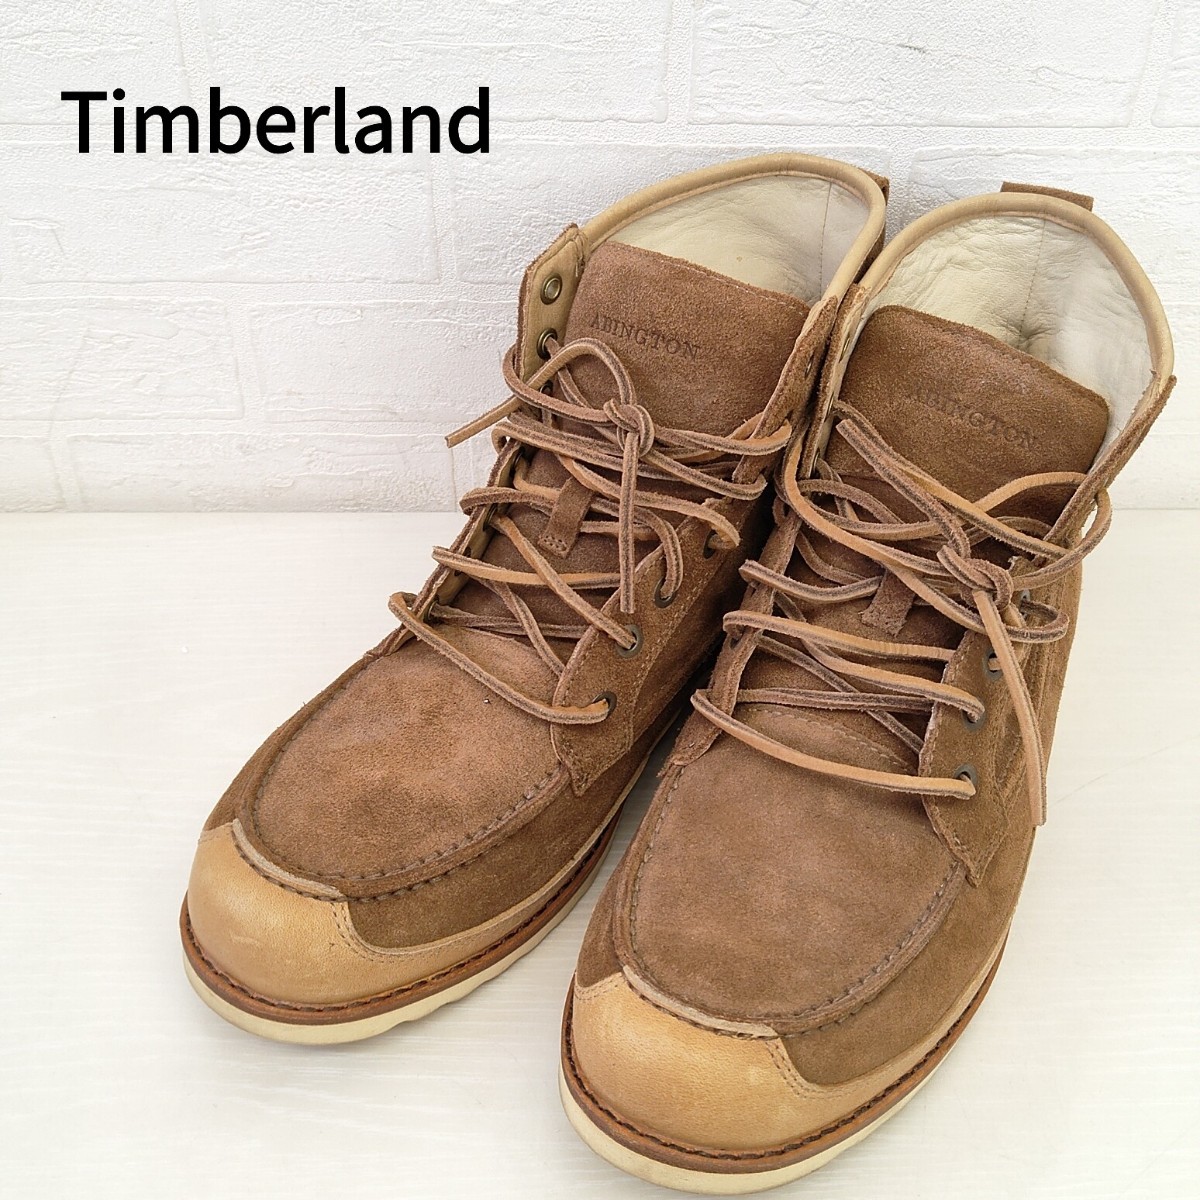 Timberland ABINGTON ブーツ ティンバーランド ブラウン 茶色 靴 革靴 メンズ レザー ショートブーツ アビントン SC_画像1